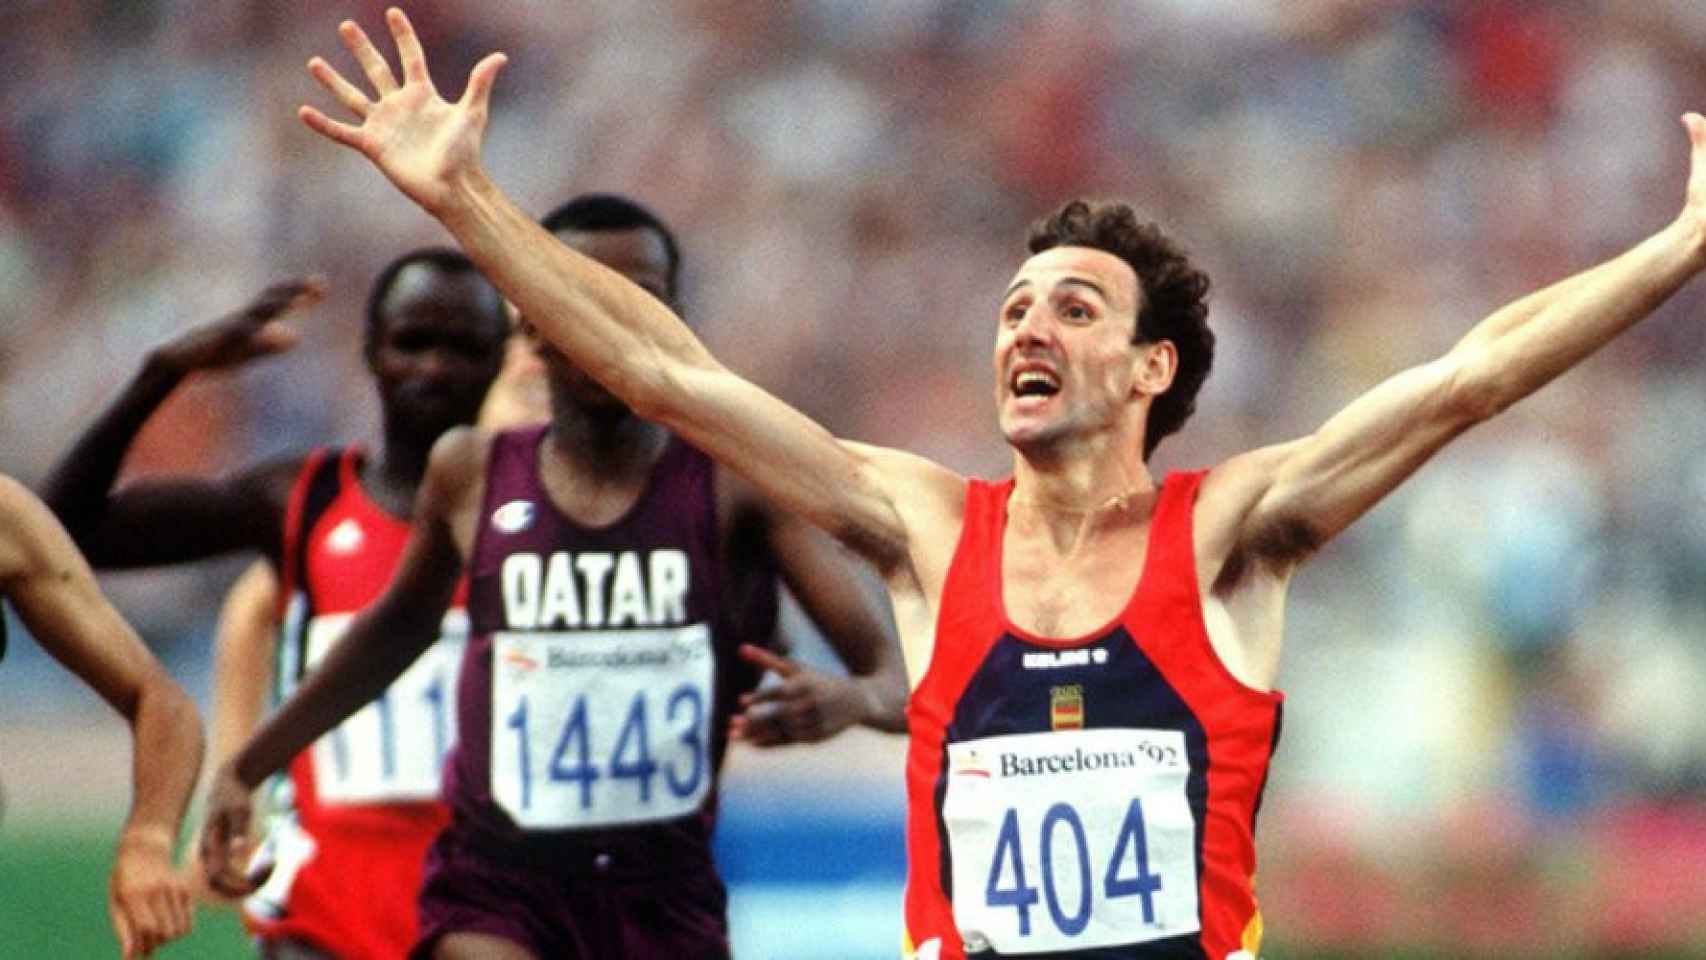 Fermín Cacho celebra su victoria en los 1.500 metros, en el Estadio Olímpico de Montjuic, en 1992